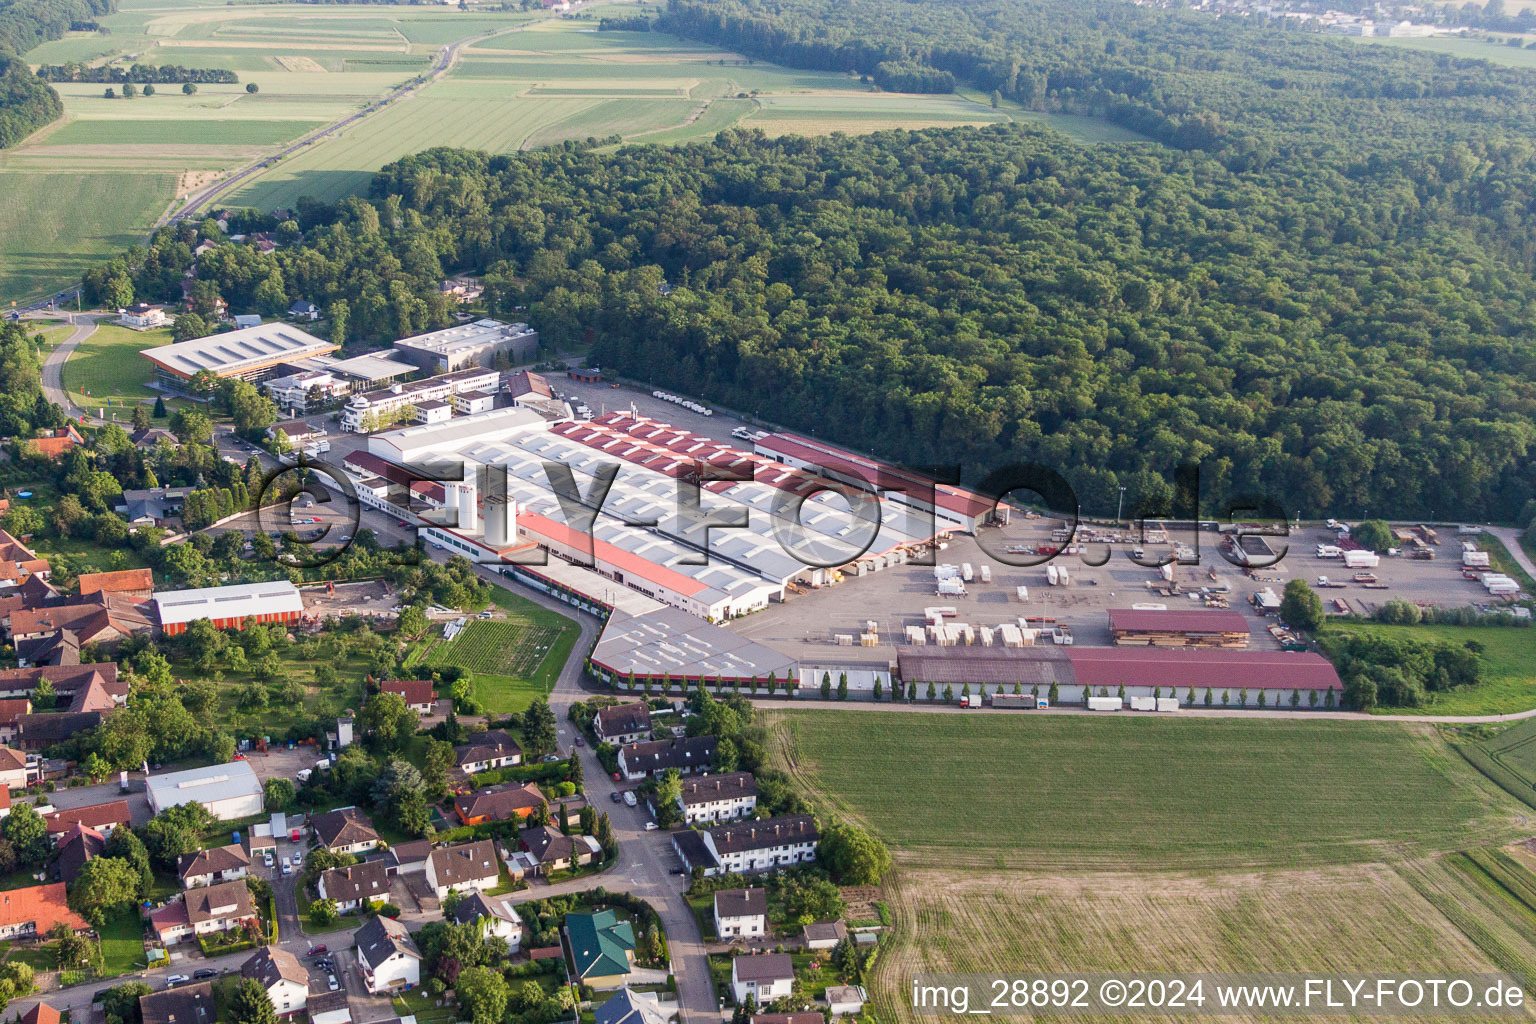 Vue aérienne de Site de l'usine WeberHaus GmbH & Co. KG à le quartier Linx in Rheinau dans le département Bade-Wurtemberg, Allemagne